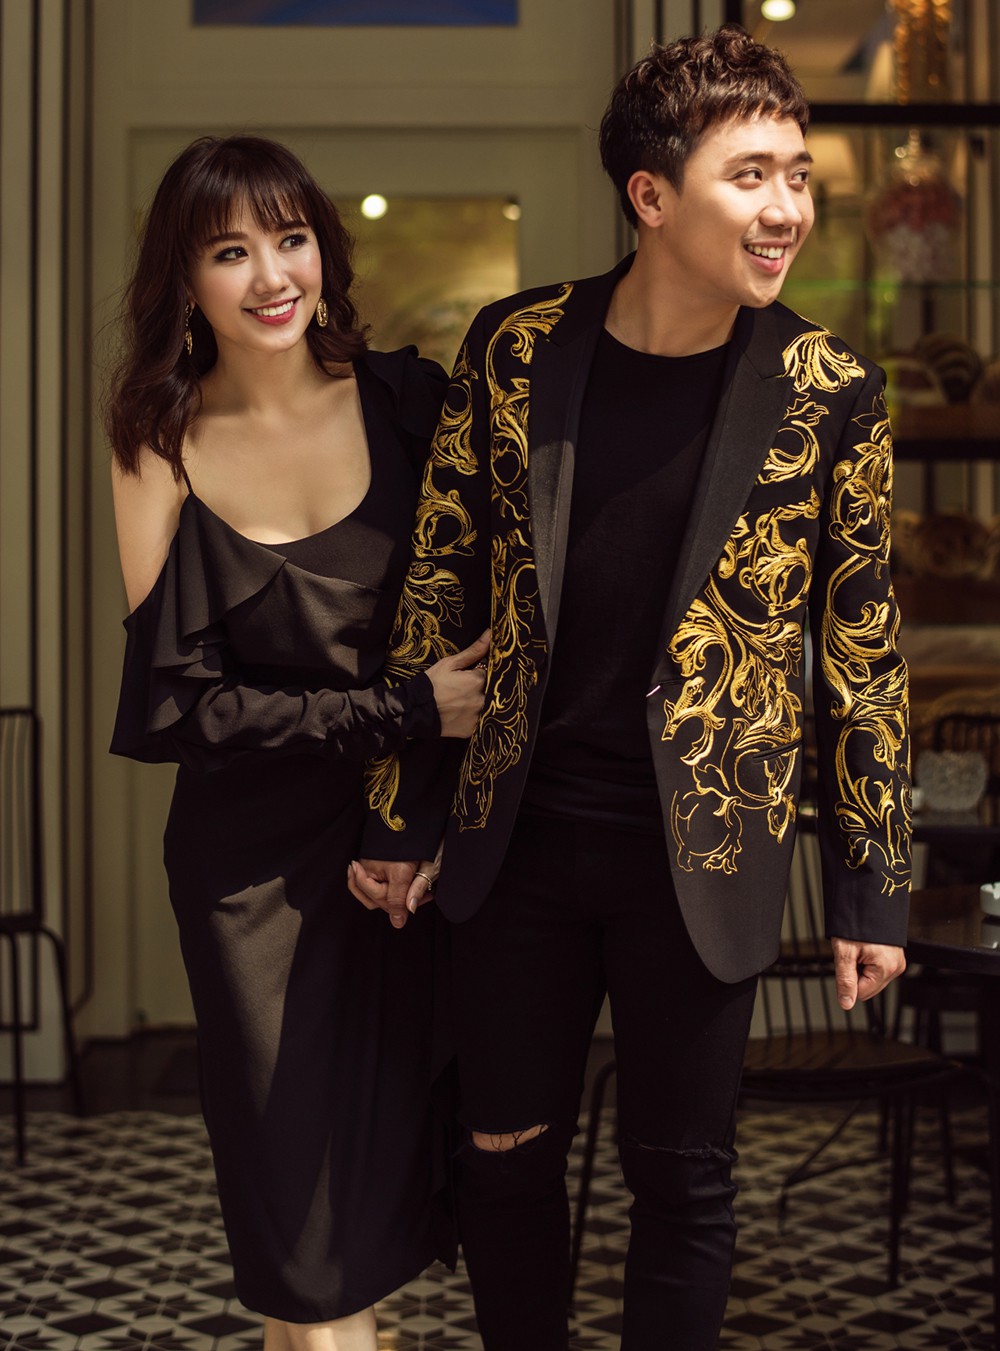 Không chỉ là một cặp đôi đẹp, sau khi kết hôn, Trấn Thành và Hari Won còn ngày càng thăng hoa trong sự nghiệp, cả những dự án hợp tác cùng nhau lẫn công việc cá nhân của từng người. Có thể nói, Trấn Thành và Hari Won đang là một trong những cặp đôi thành công và hạnh phúc của showbiz Việt